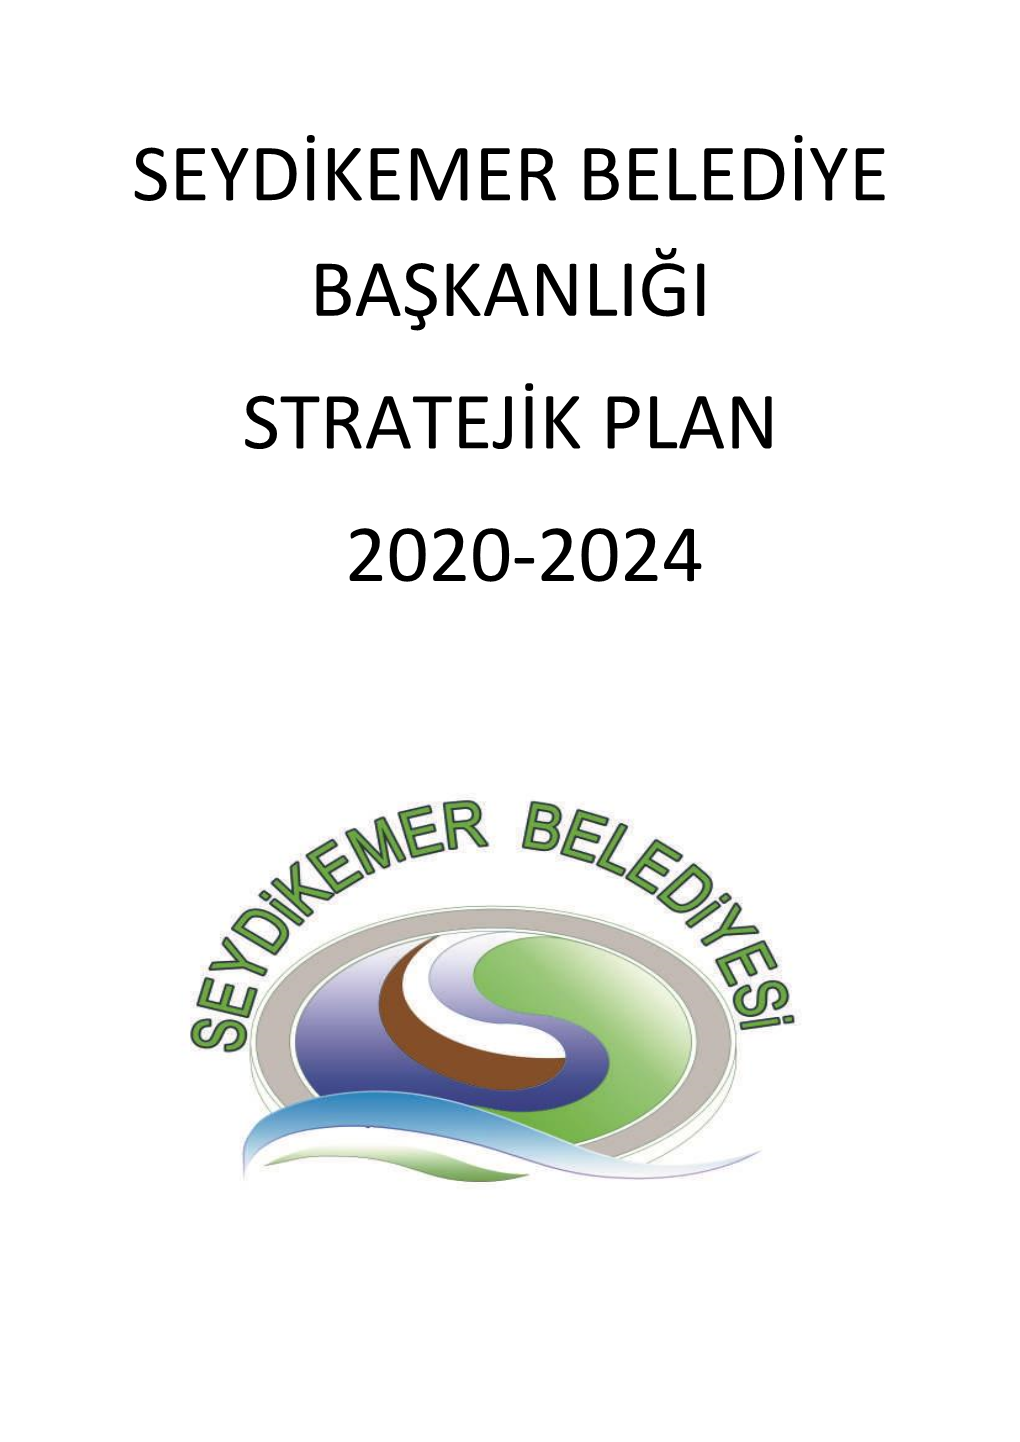 Seydikemer Belediye Başkanlığı Stratejik Plan 2020-2024